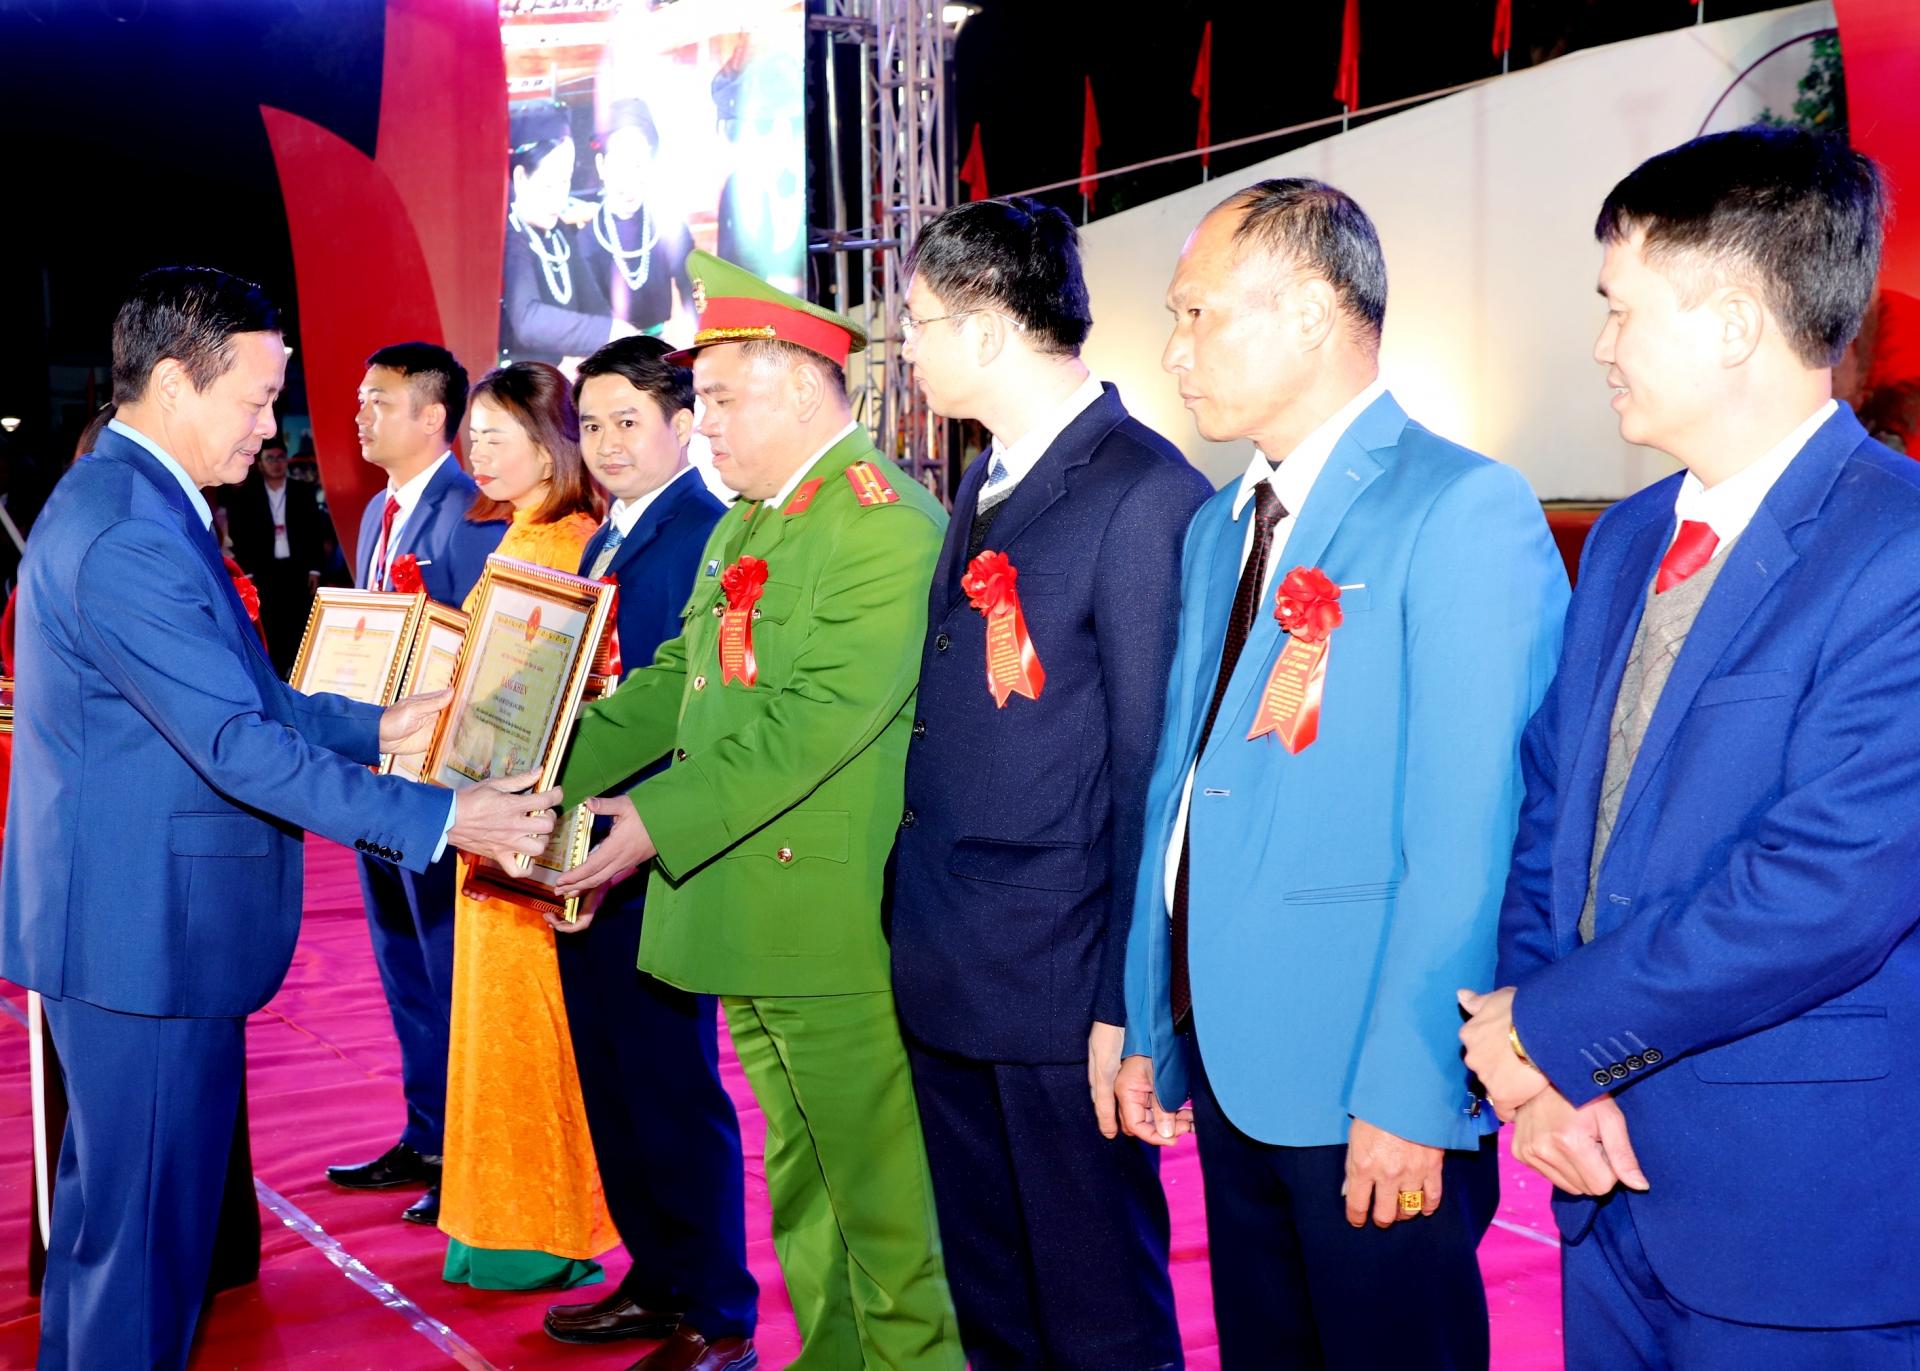 Chủ tịch UBND tỉnh Nguyễn Văn Sơn tặng Bằng khen cho các tập thể có thành tích xuất sắc trong sự nghiệp xây dựng và phát triển huyện Quang Bình